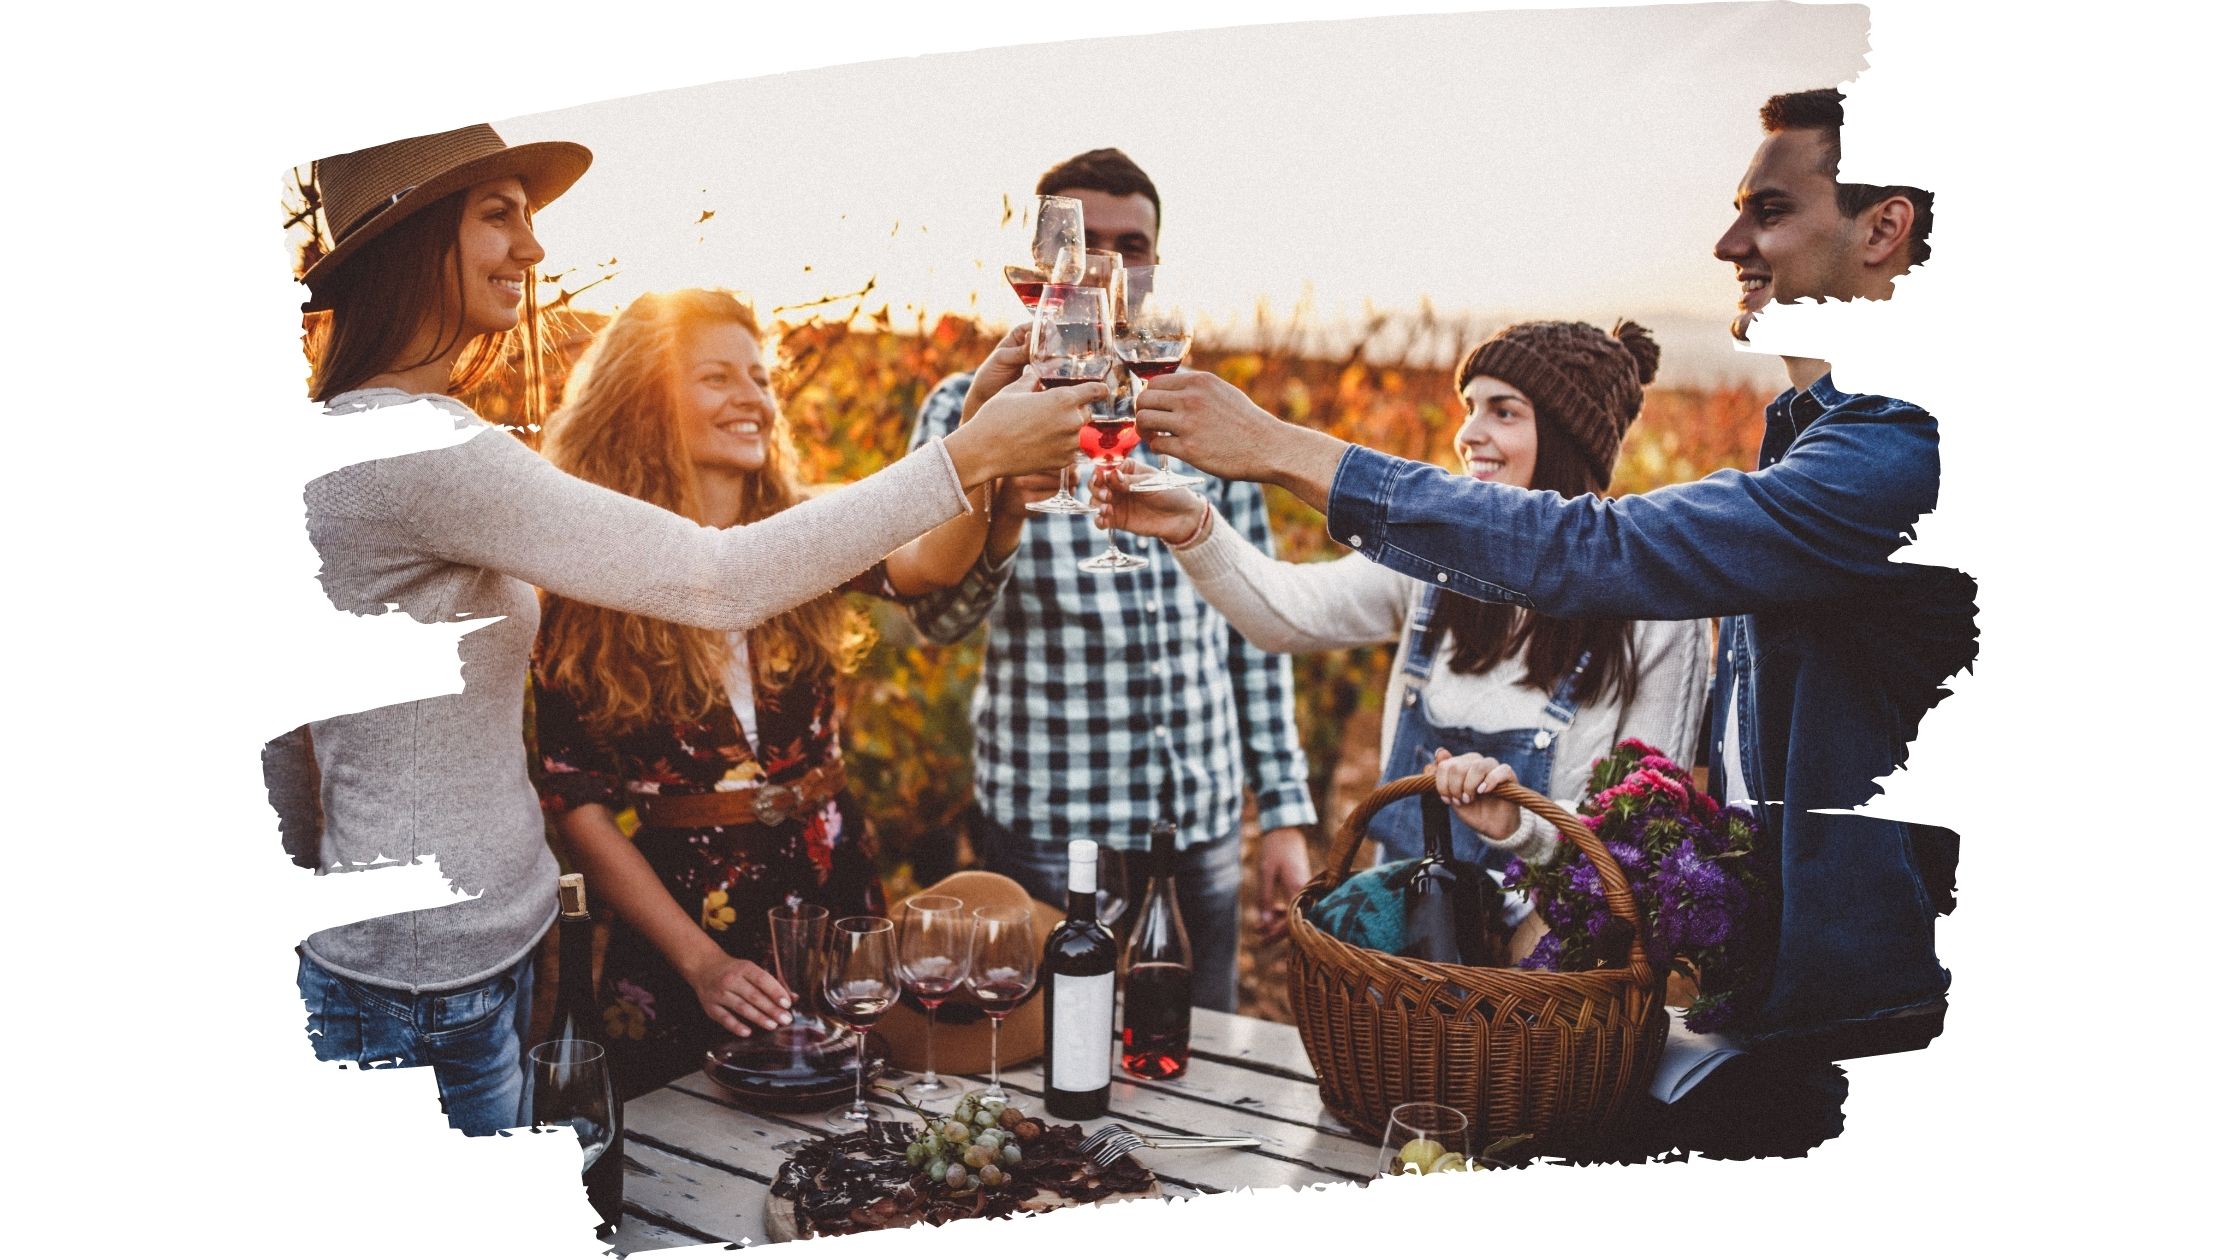 Vinski gostje nazdravljajo v vinogradih nasmejani sončni zahod